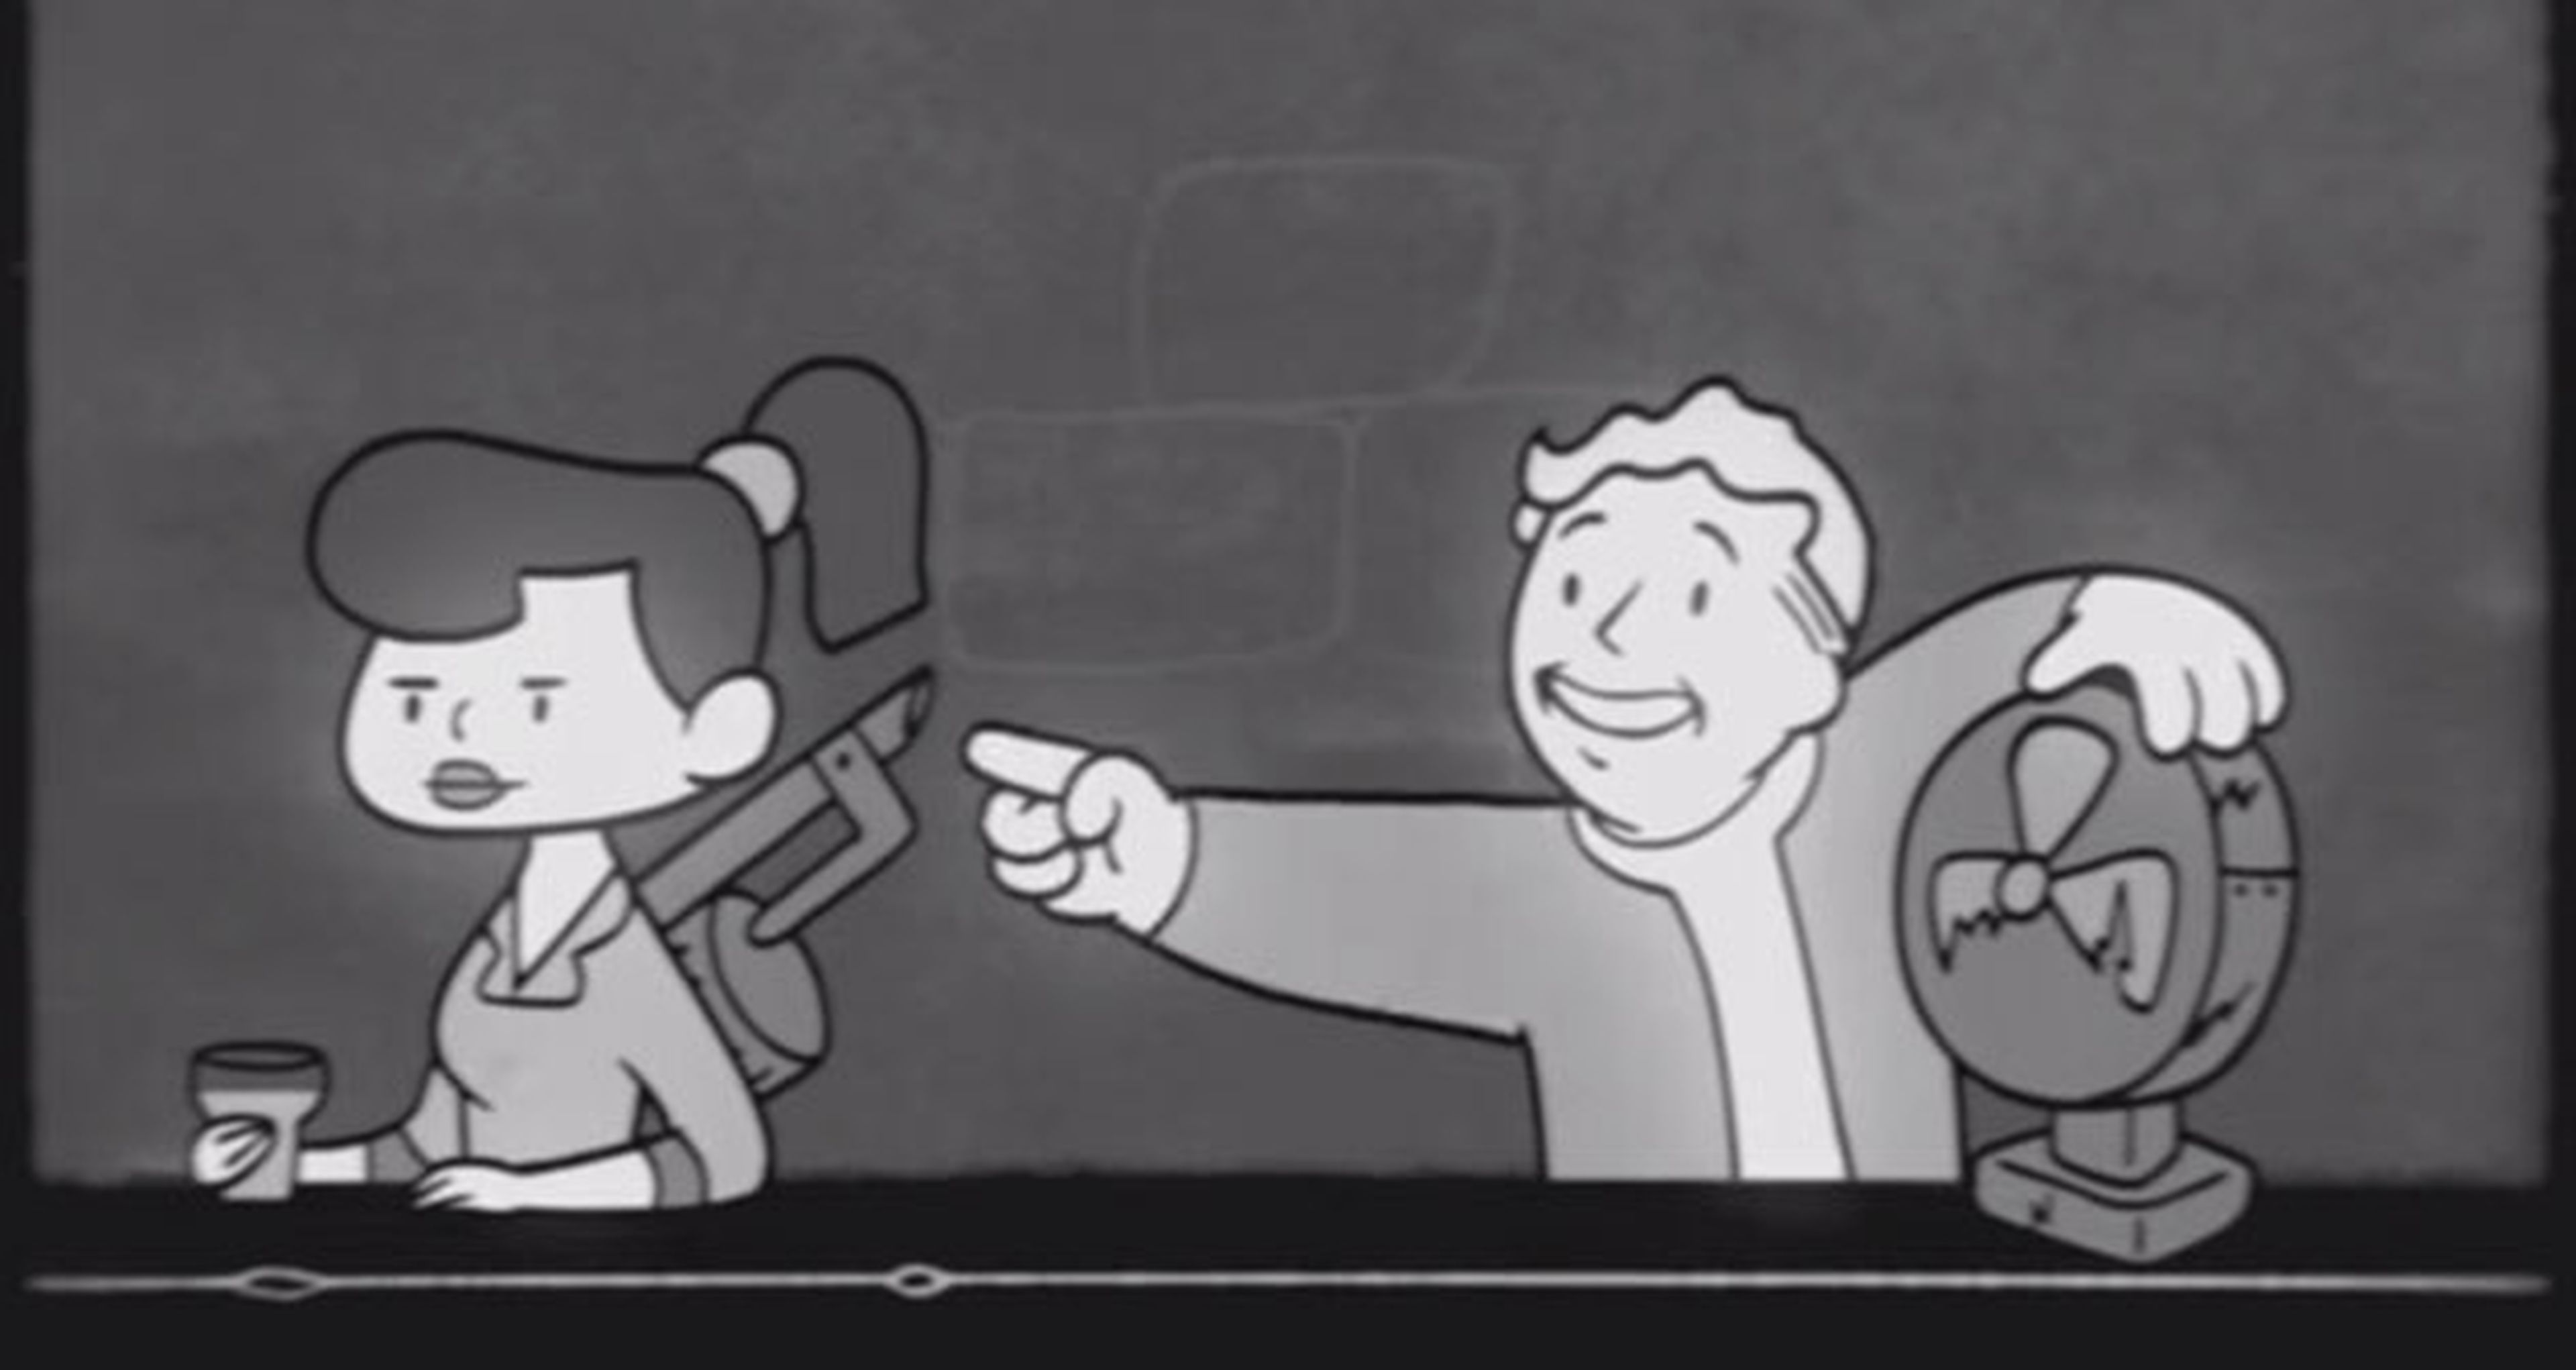 Fallout 4, serie de vídeos S.P.E.C.I.A.L.: el carisma